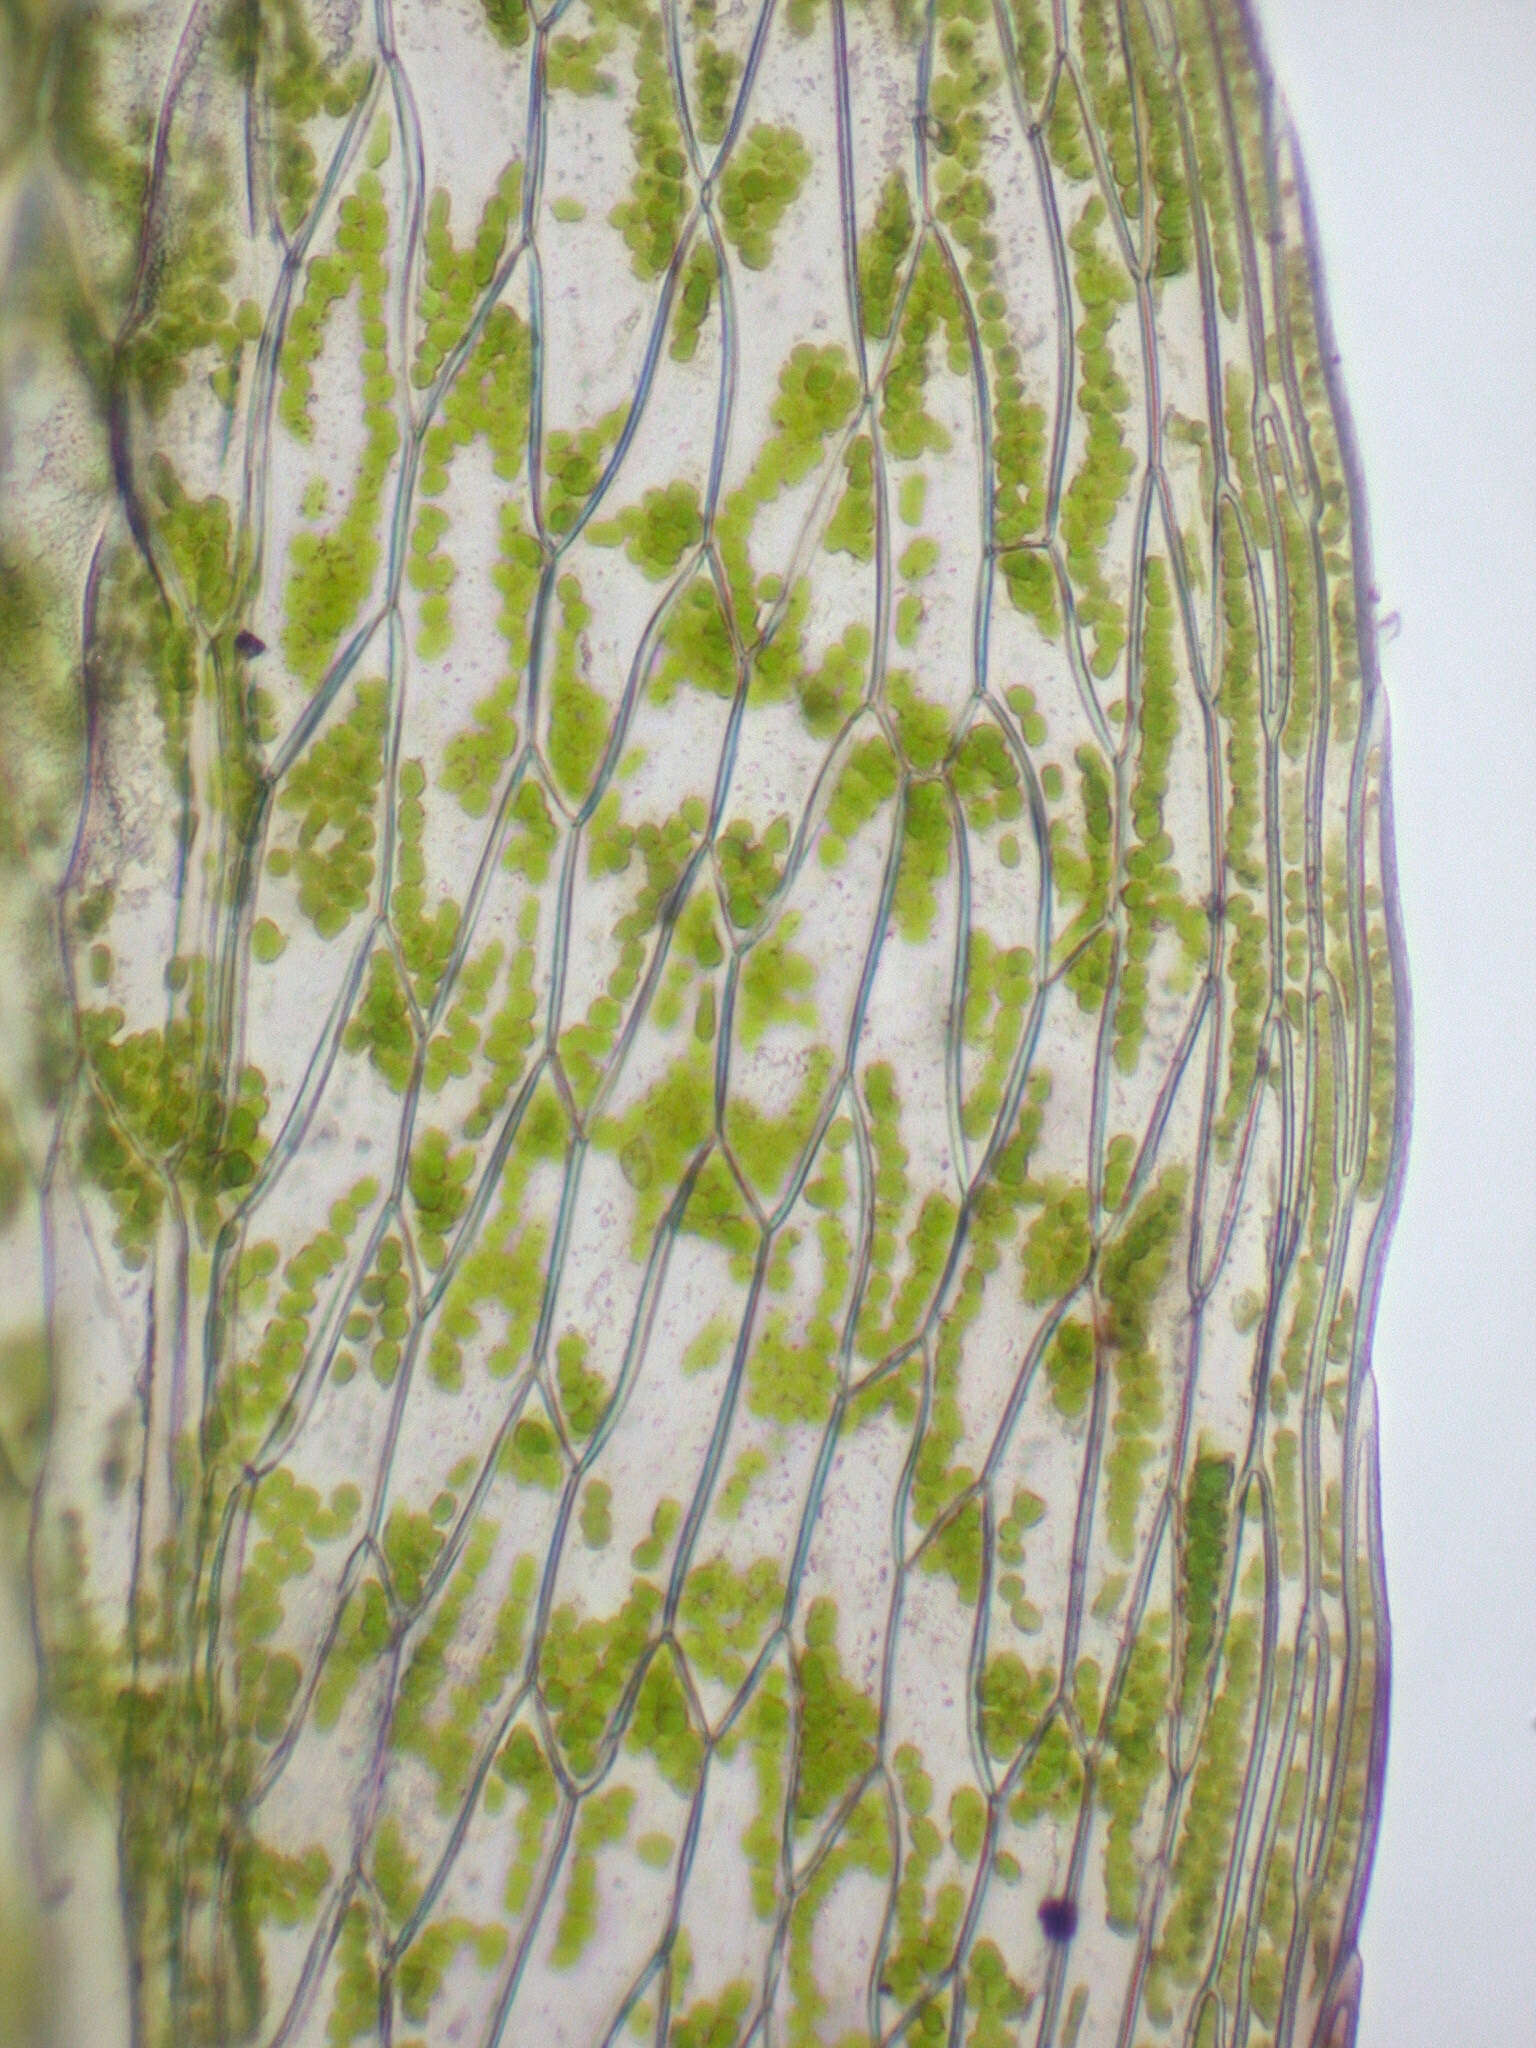 Image of Tozer's epipterygium moss